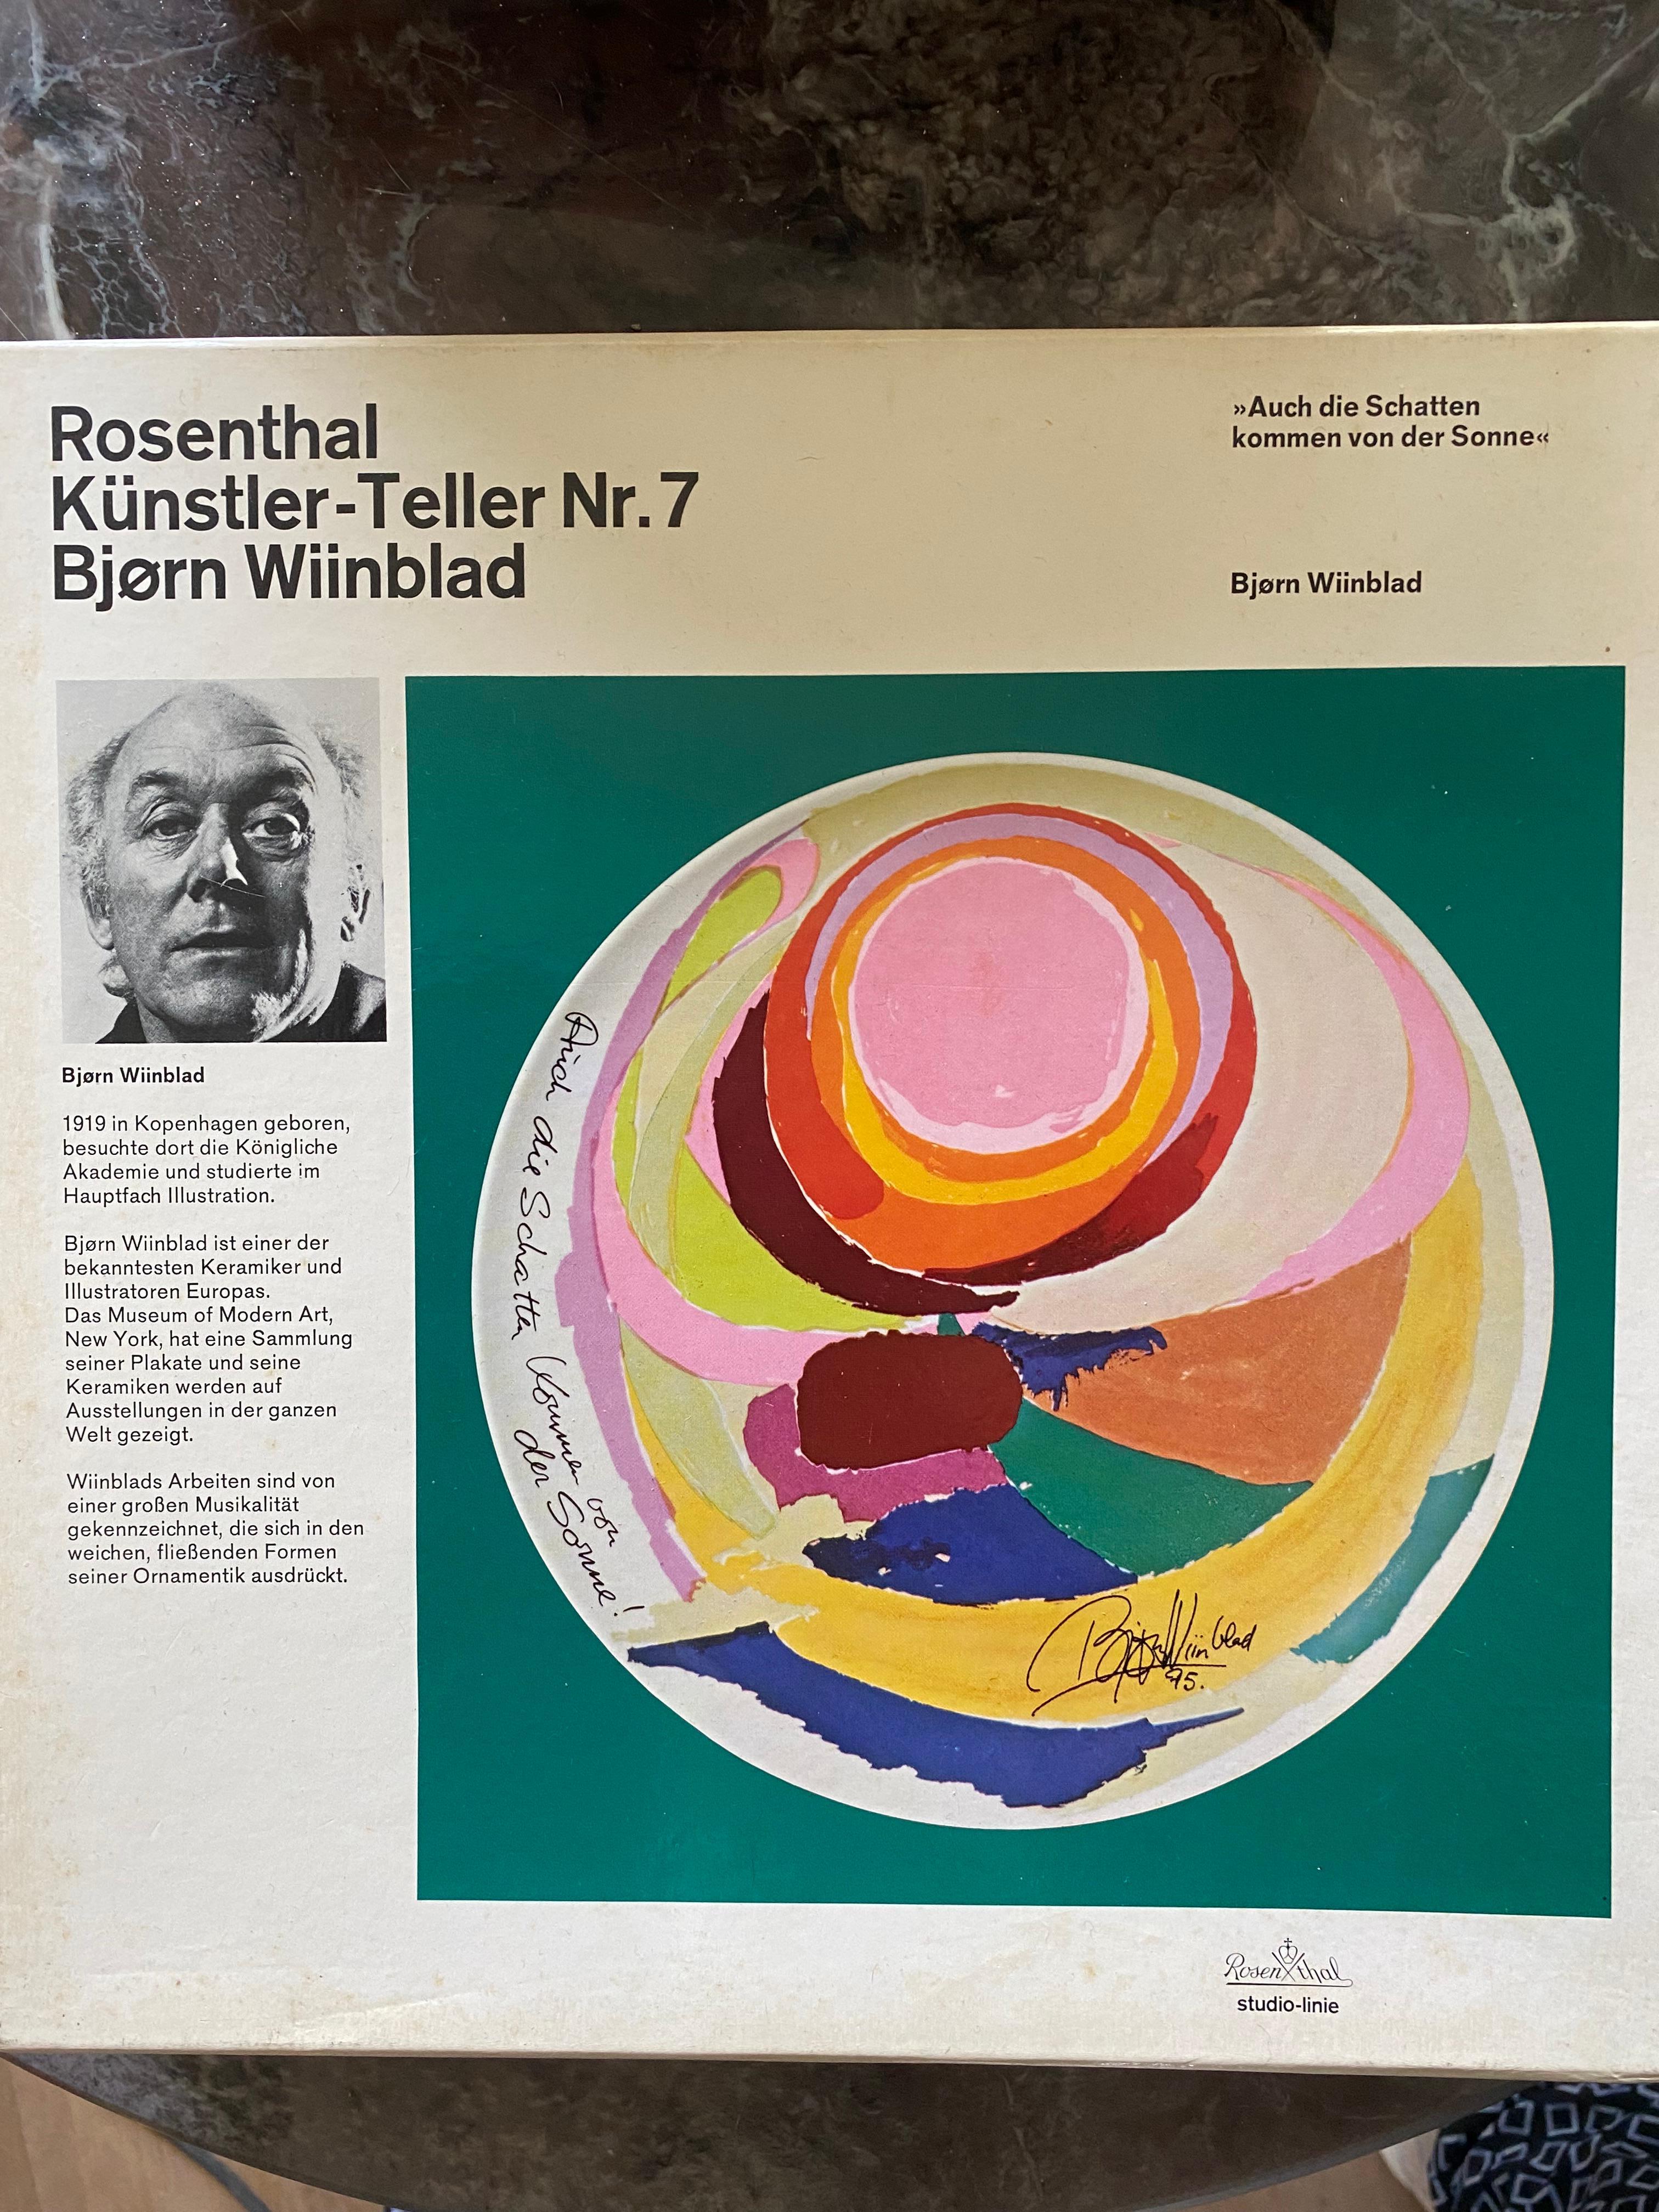 Wunderschöne Wandtafel von Bjorn
Wiinblad für Rosenthal. Die  Plaque wurde 1975 in einer Auflage von 5000 Stück hergestellt, und dieses Exemplar ist die Nummer 1328. 

Der Text auf der Platte ist deutsch 